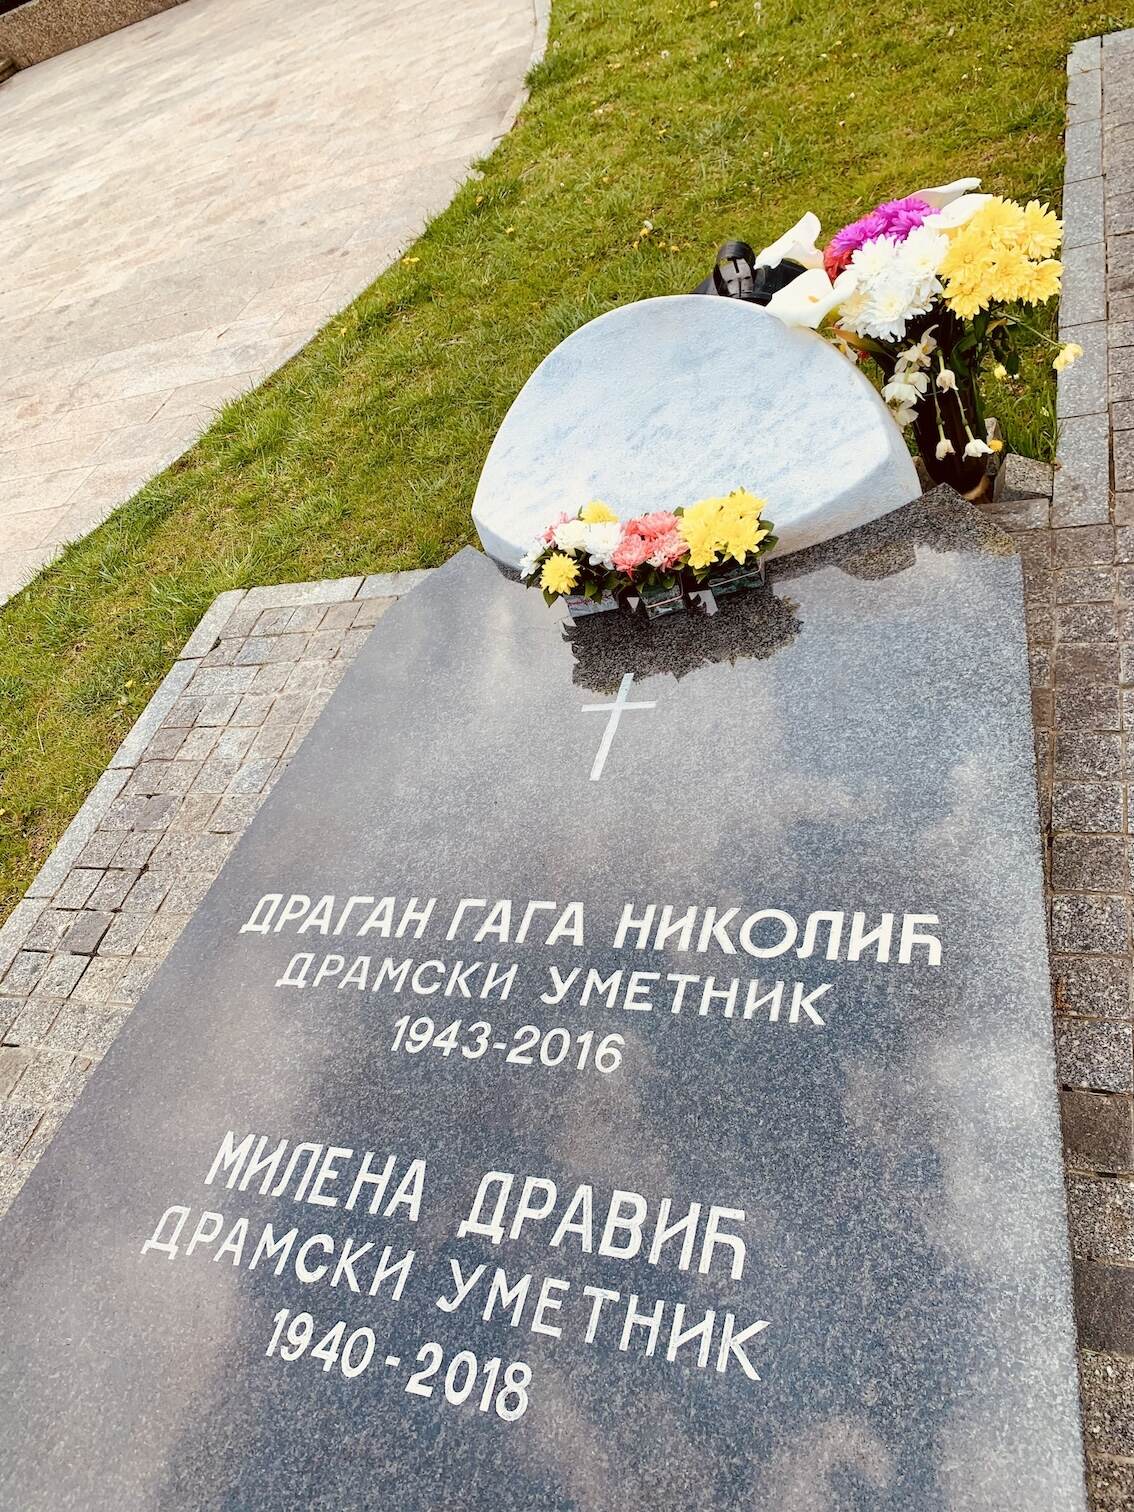 Grave of the Serbian movie star couple Milena Dravić and Dragan Nikolić